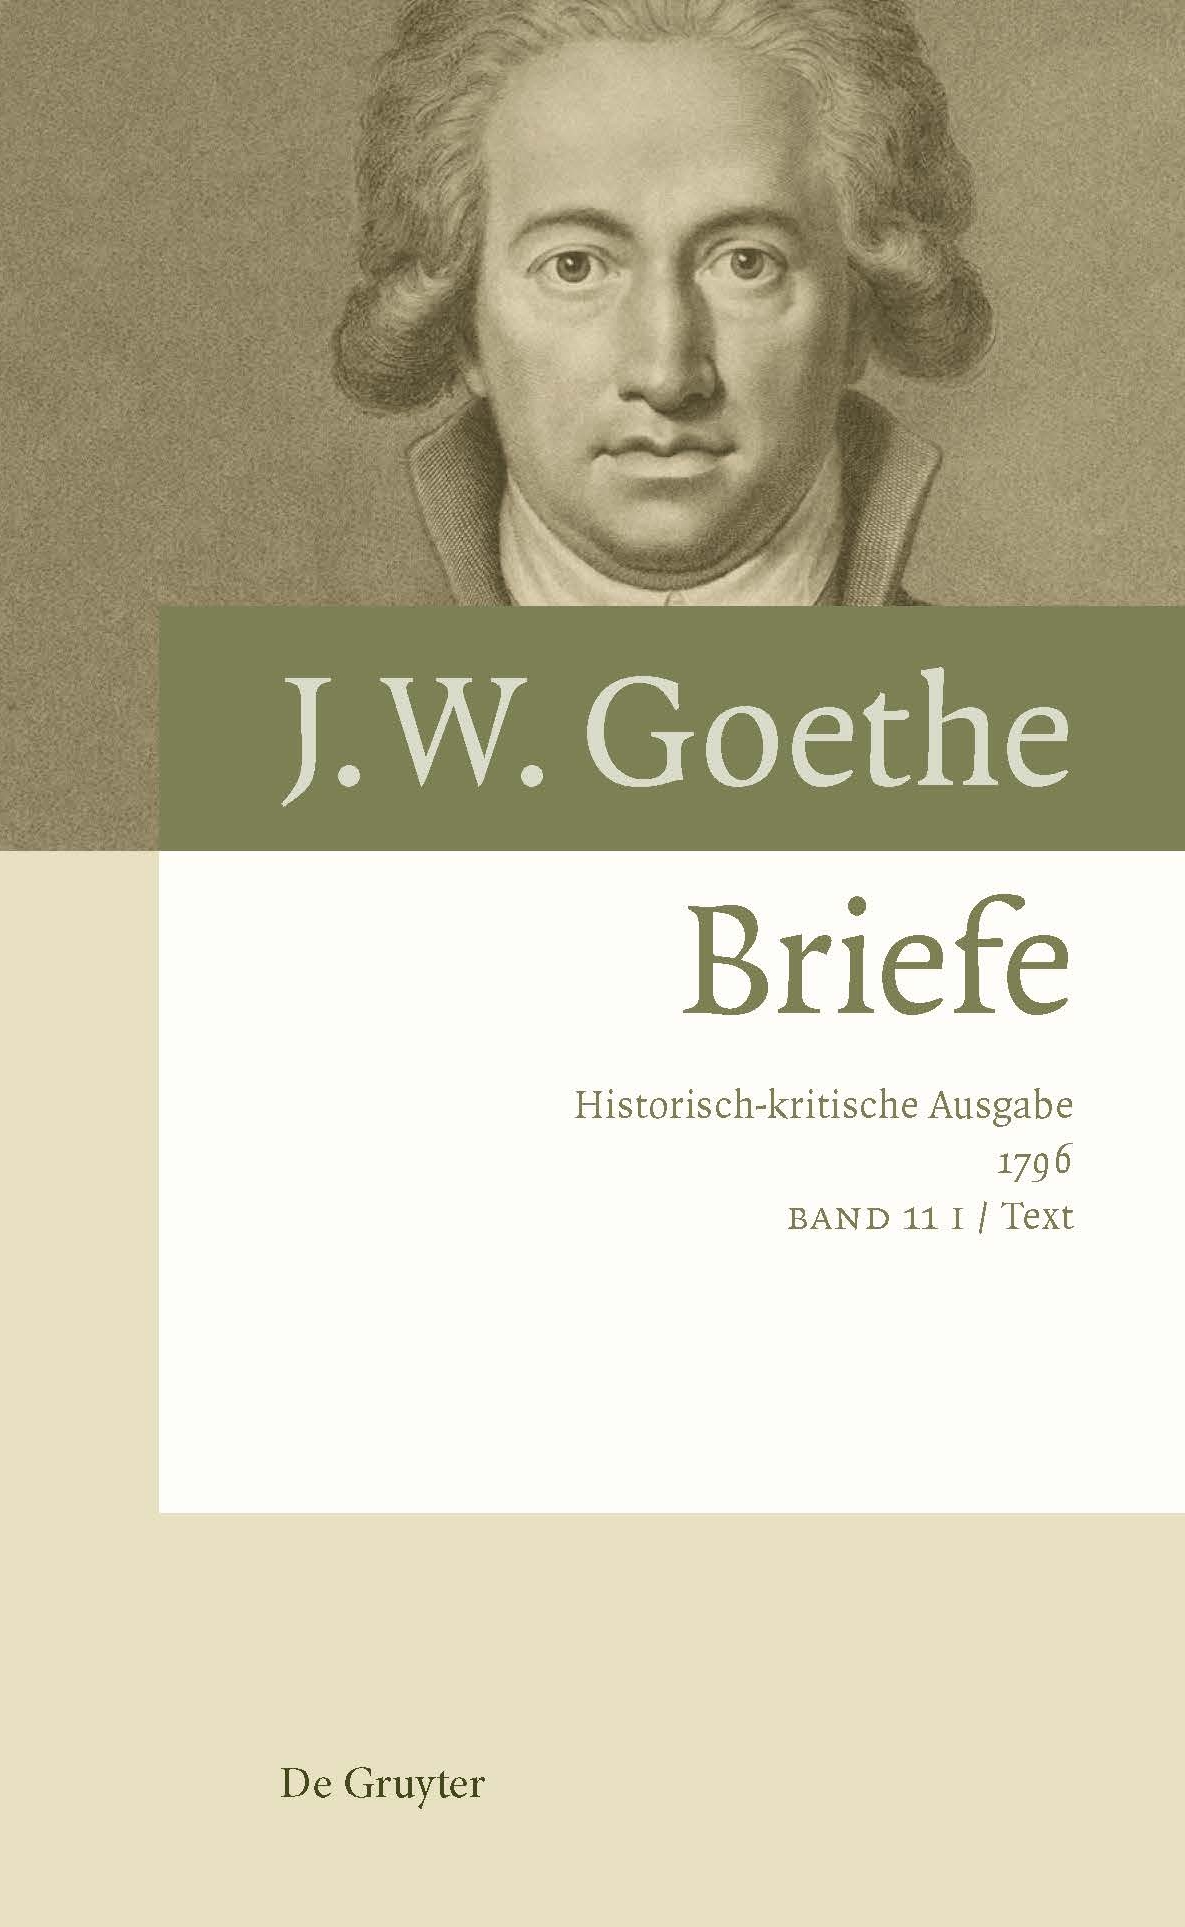 Cover des Druckbandes 11 I, erschienen bei De Gruyter.